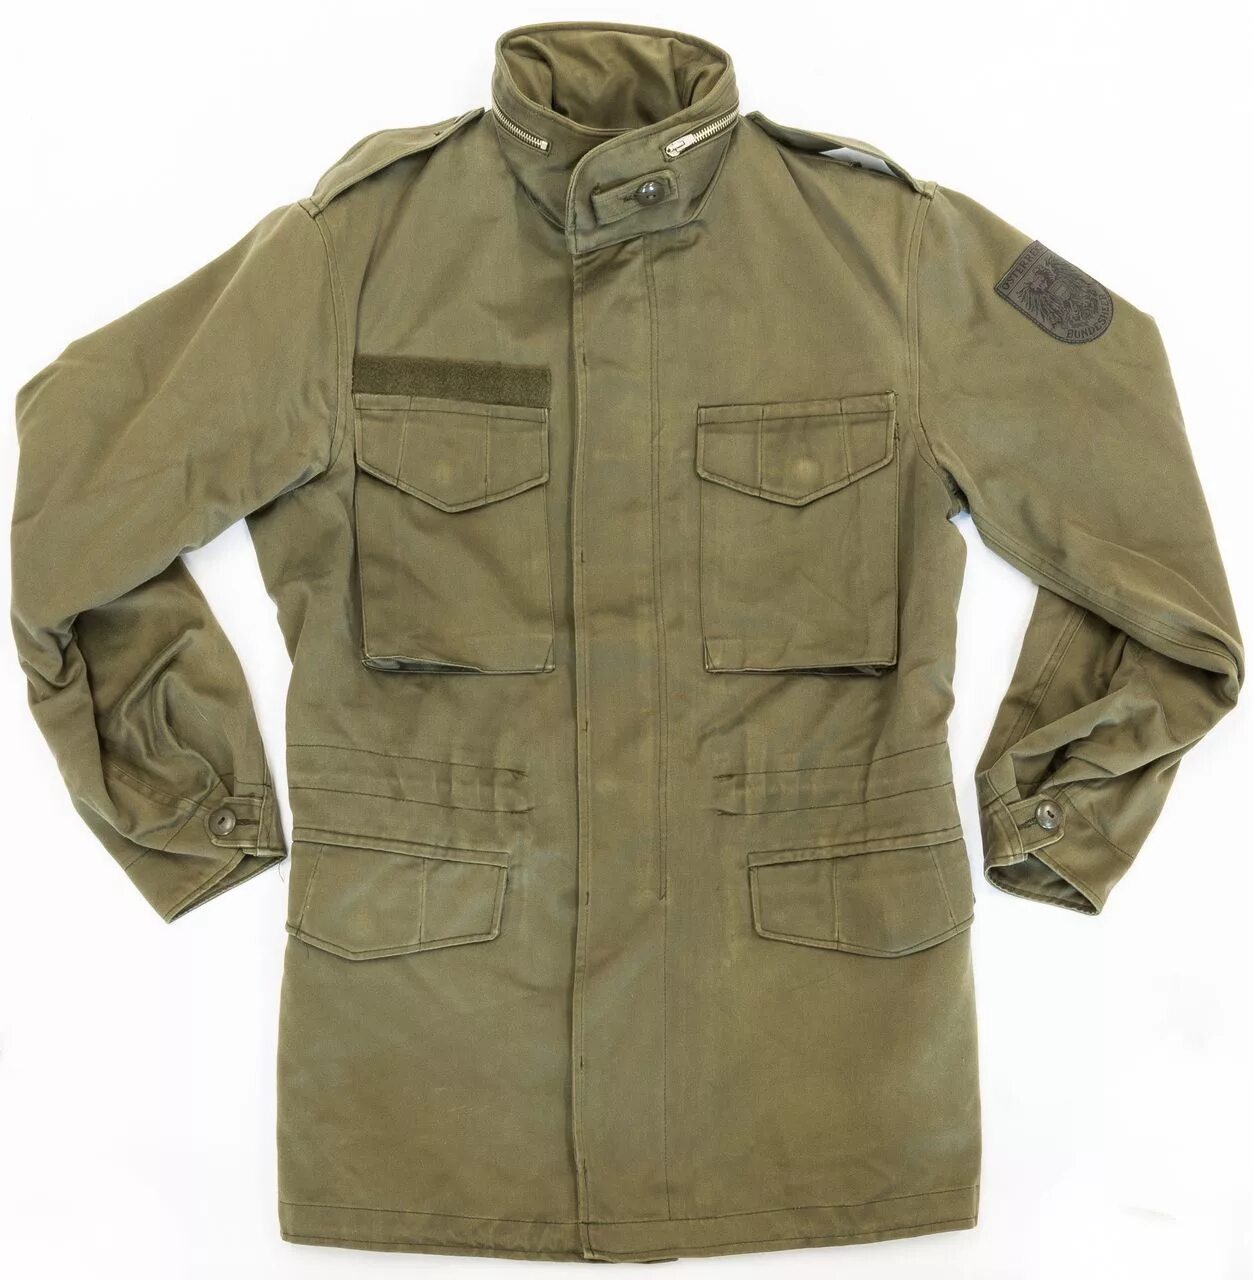 Купить форму военного образца. Parka m65 Austria. Olive Drab куртка. Китель м65 австрийский. Рубашка м65.